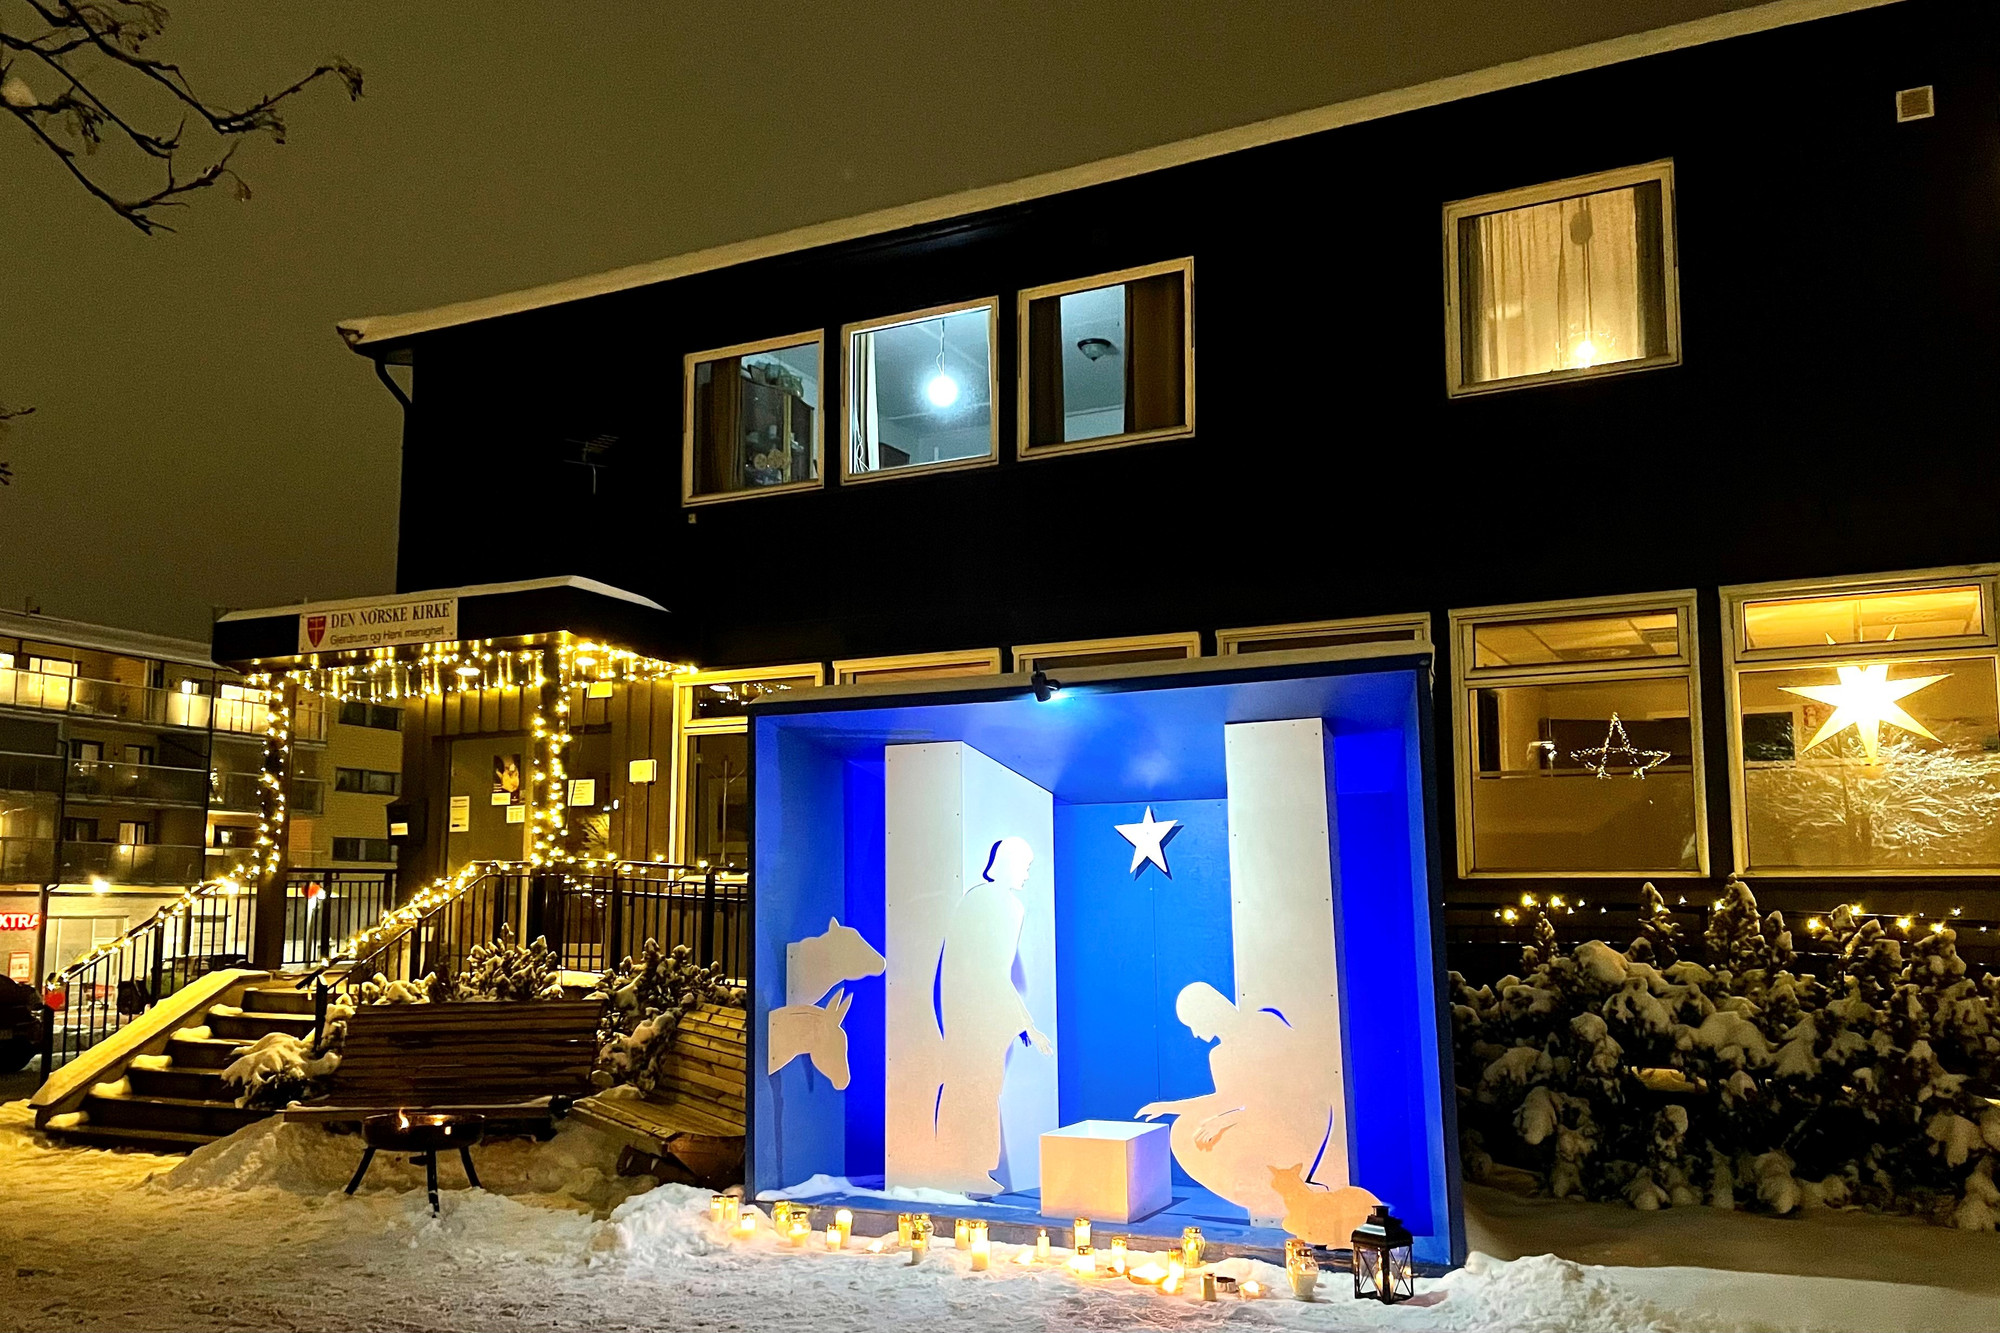 Bilde av en opplyst utendørs julekrybbe. Det er natt og snø på bakken. Krybben er et opplyst rom med blå vegger, med hvite utskårede figurer i full størrelse av en mann og en kvinne som bøyer seg over en hvit kloss som symboliserer krybben. Krybben står på fortauet utenfor et hus med julelys og det er plassert grupper av gravlys og lykter i snøen.